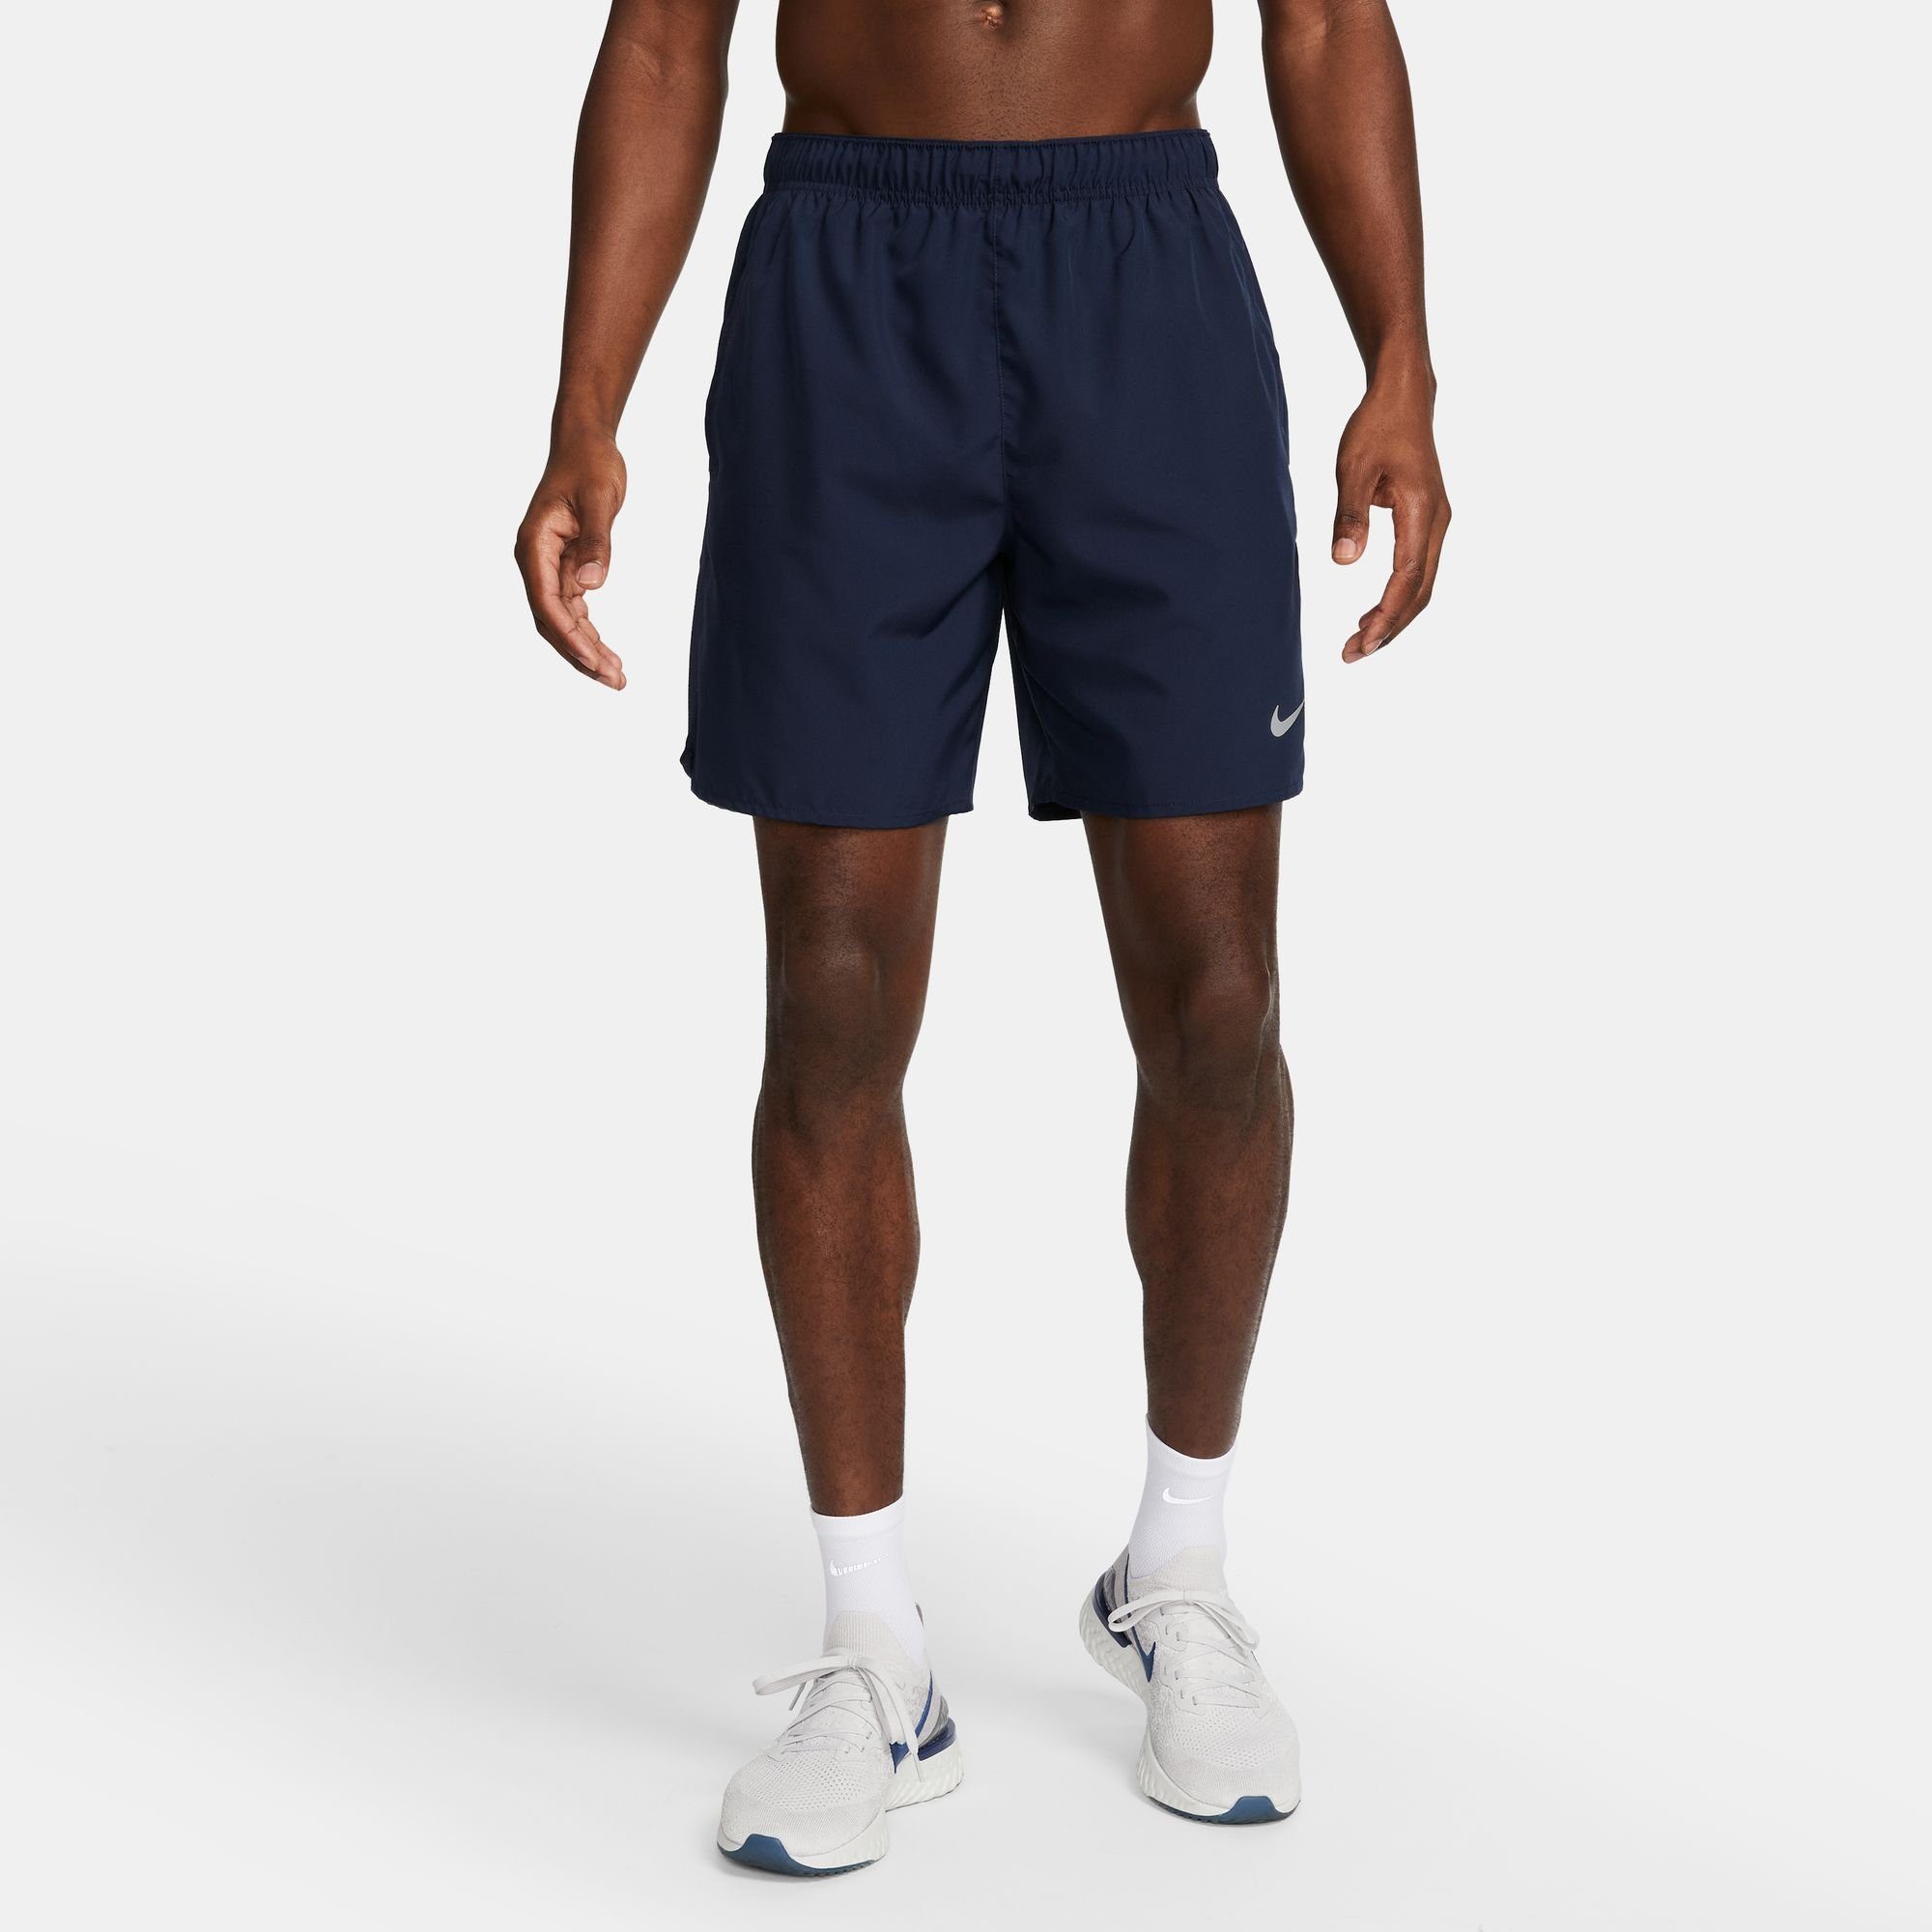 Nike Laufshorts DRI-FIT CHALLENGER MEN'S UNLINED RUNNING SHORTS, Für  Laufen, Yoga und Training entwickelt